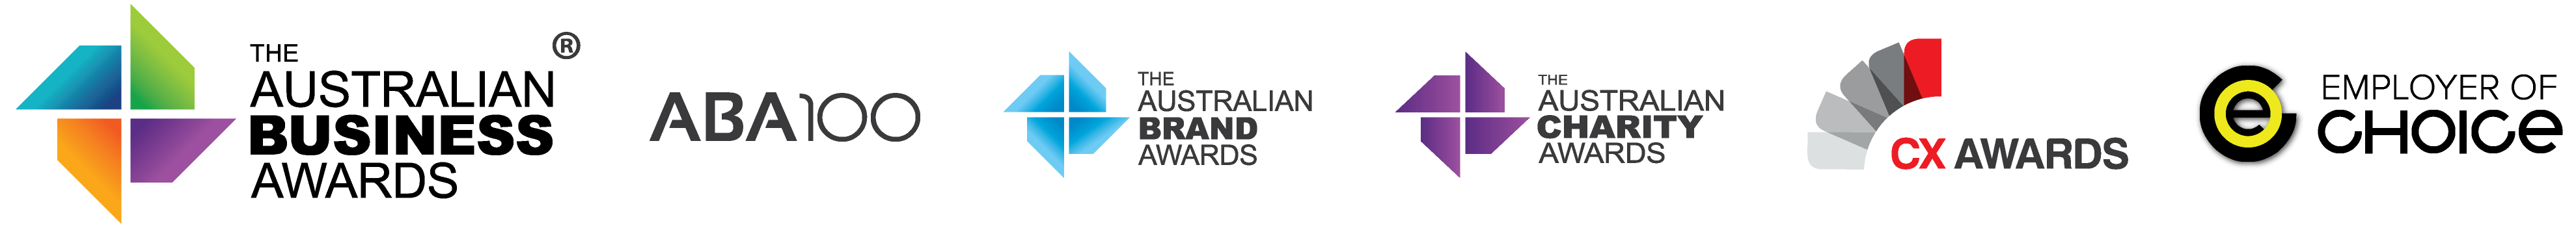 Australian Brand Logo - The Australian Brand Awards 2019